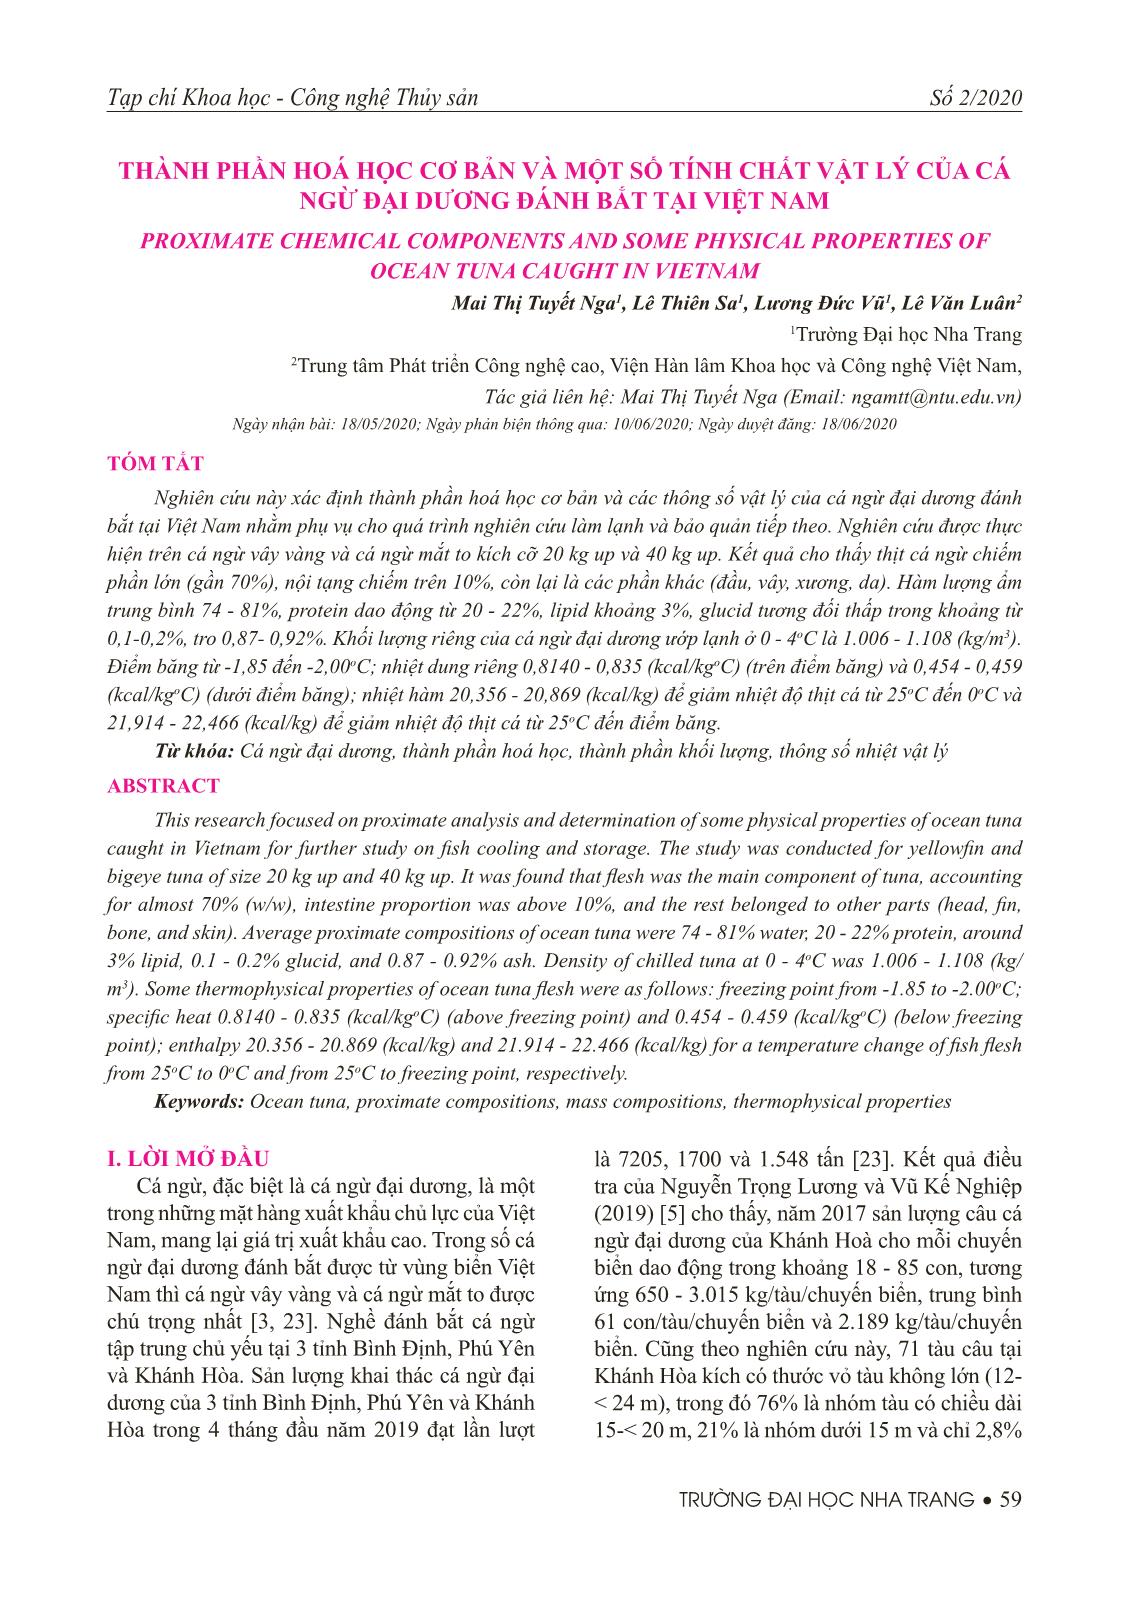 Thành phần hoá học cơ bản và một số tính chất vật lý của cá ngừ đại dương đánh bắt tại Việt Nam trang 1